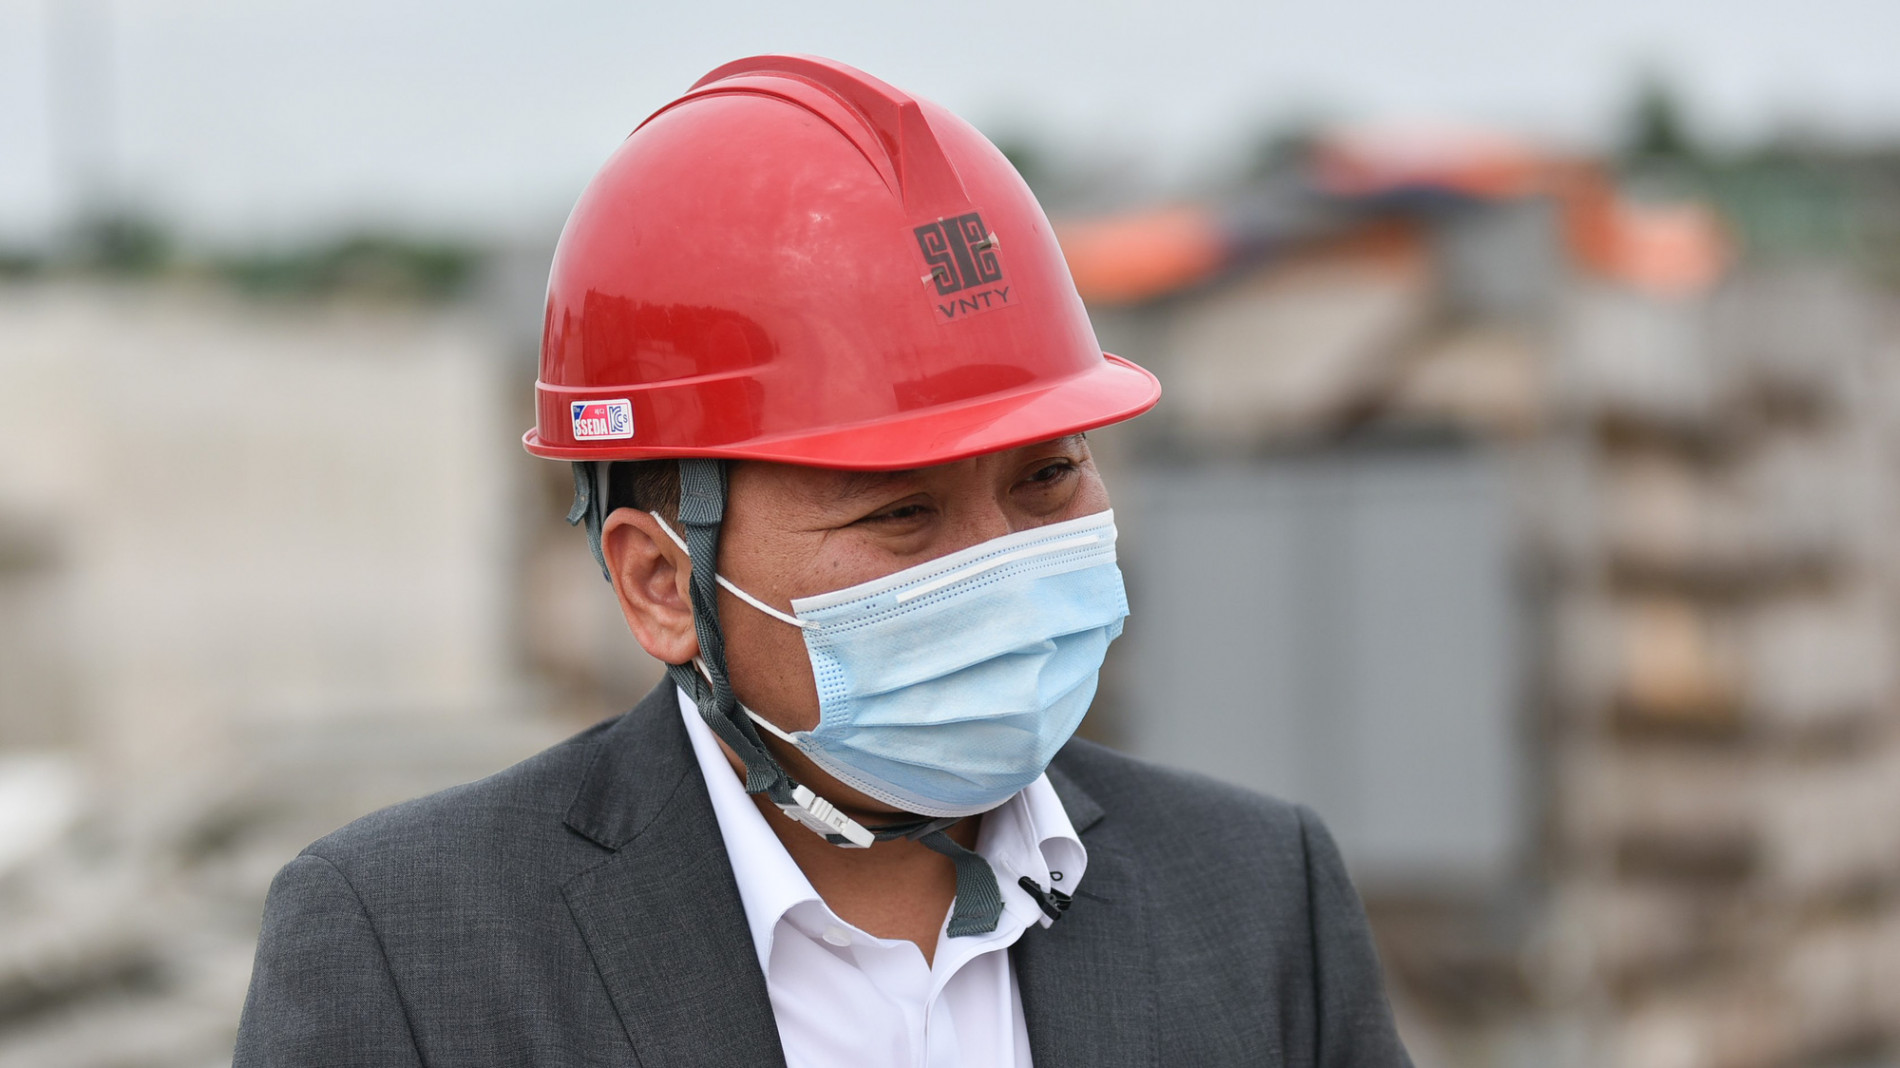 Cận cảnh nhà máy điện rác Sóc Sơn 7.000 tỷ đồng đang chậm tiến độ - Ảnh 5.